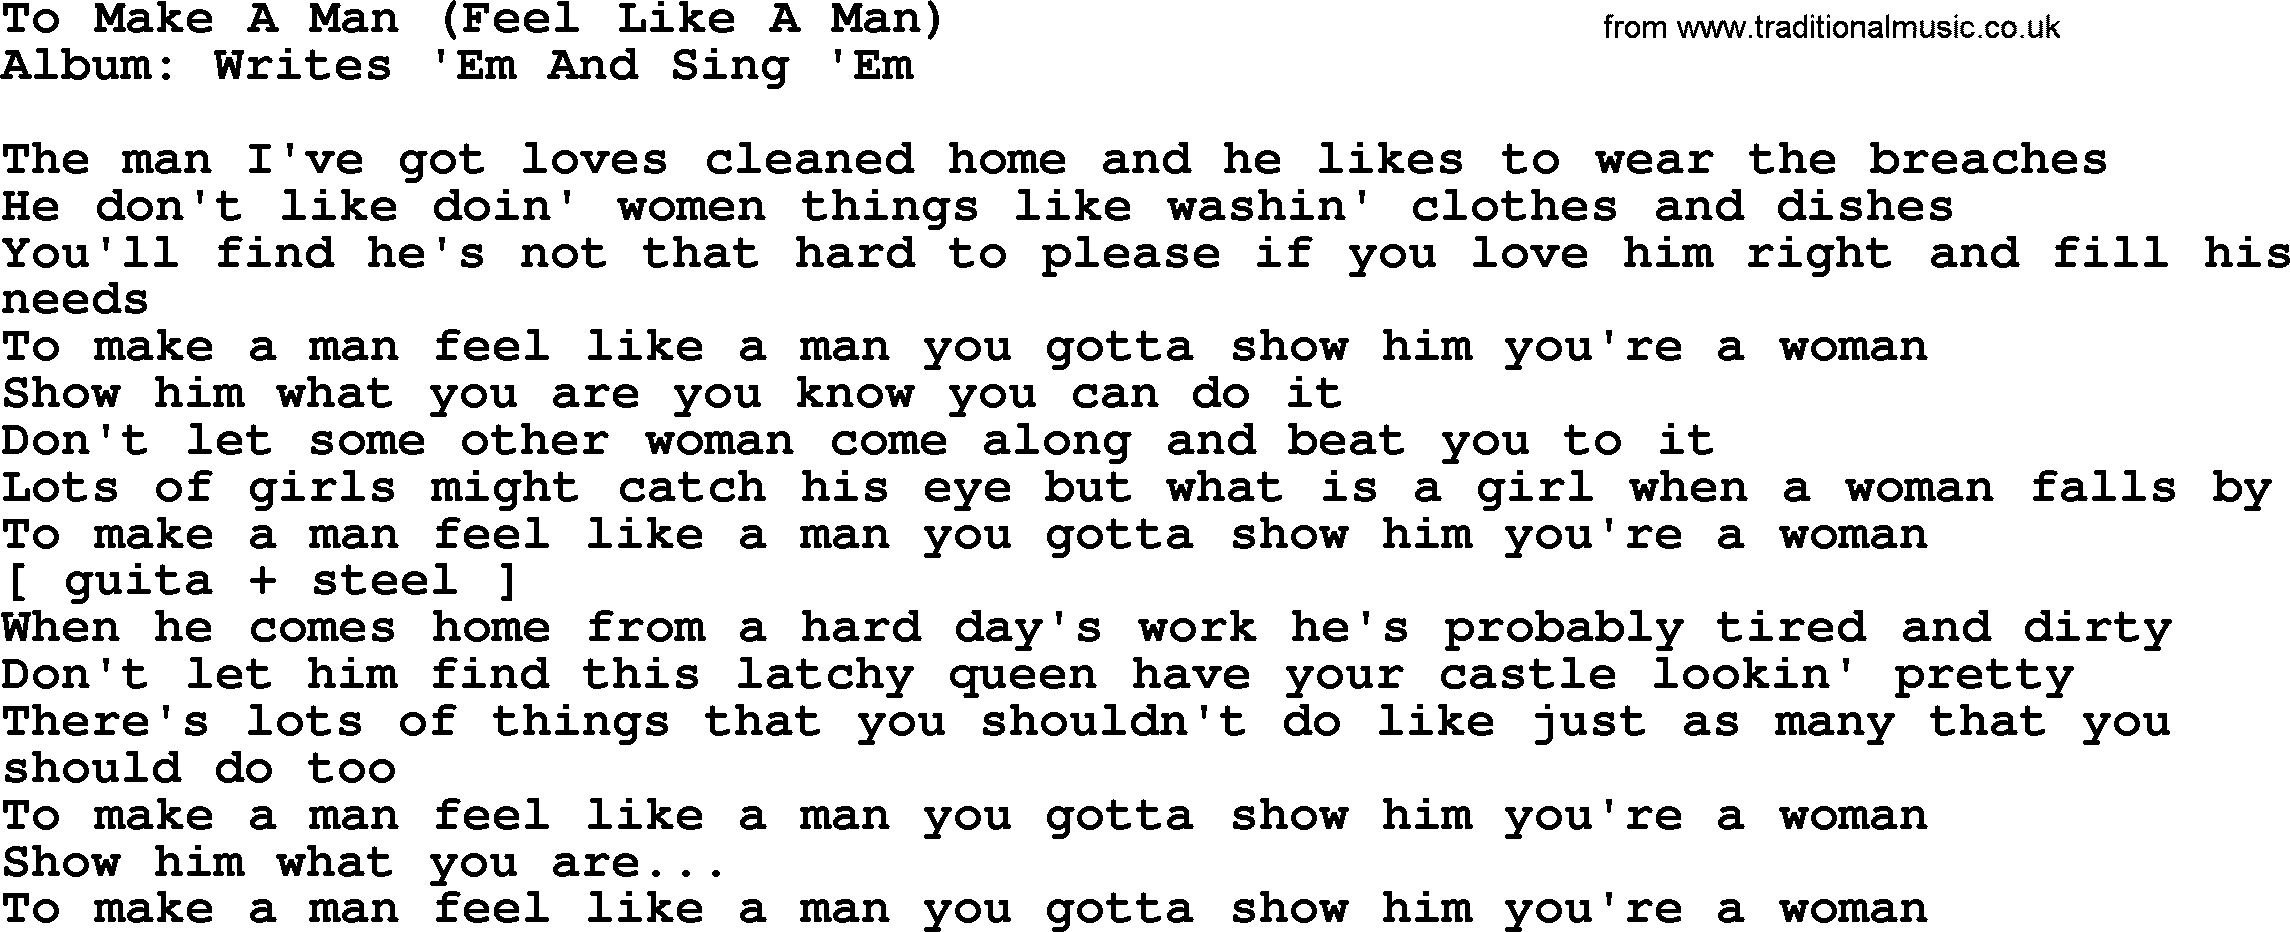 Loretta Lynn song: To Make A Man (Feel Like A Man) lyrics